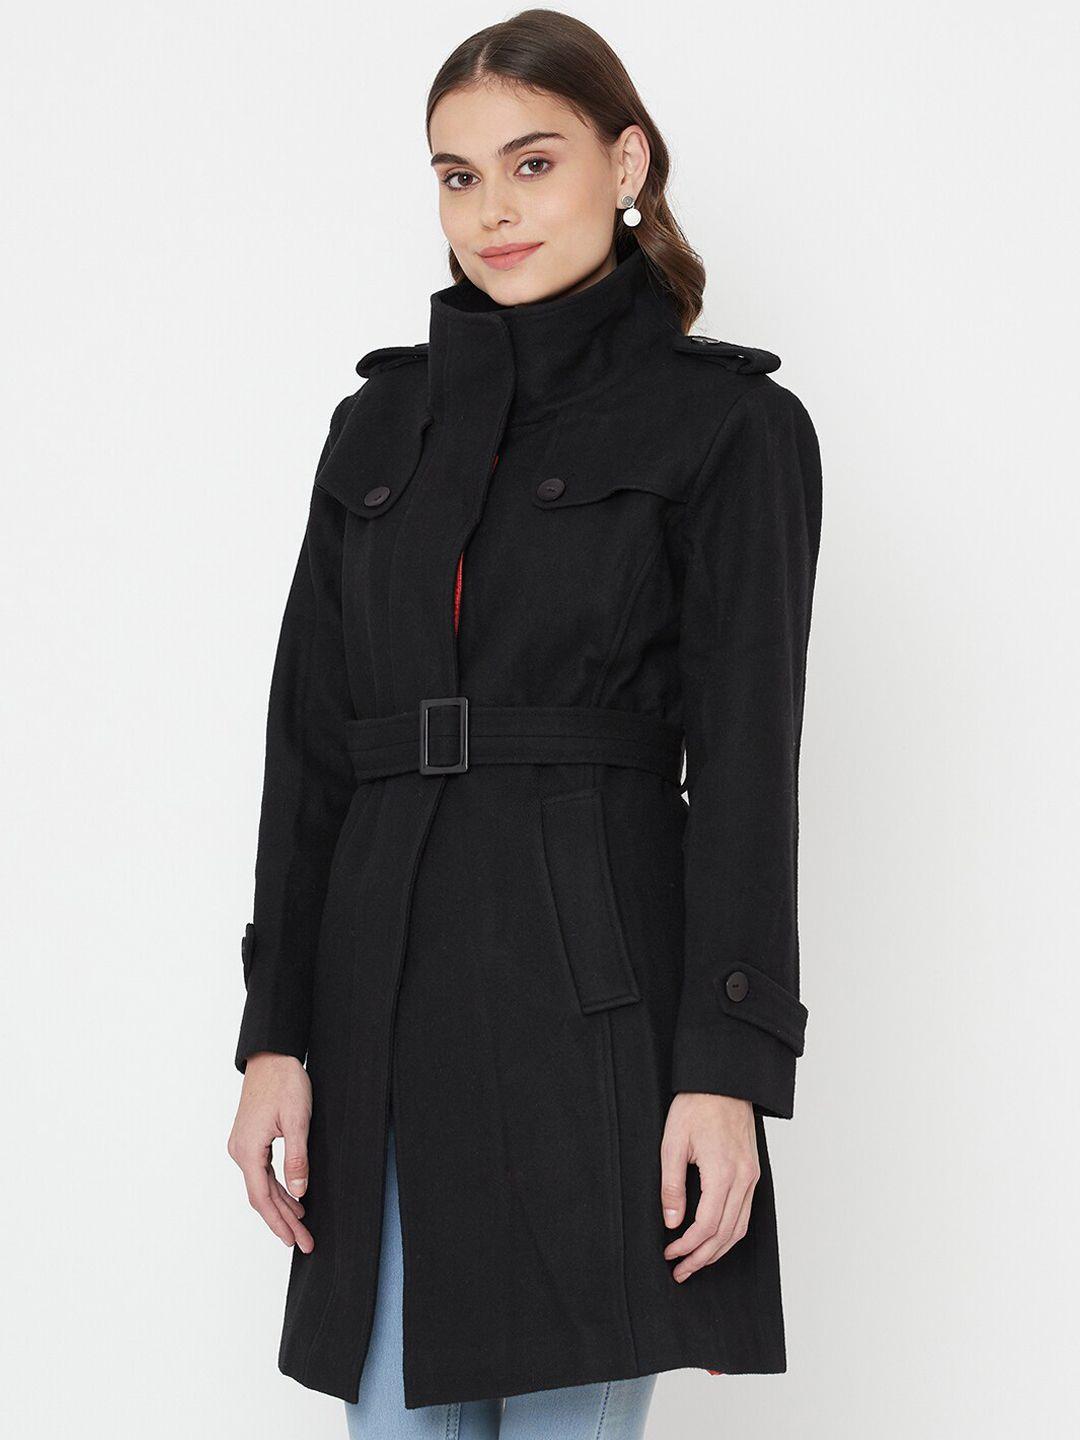 owncraft women black solid overcoat